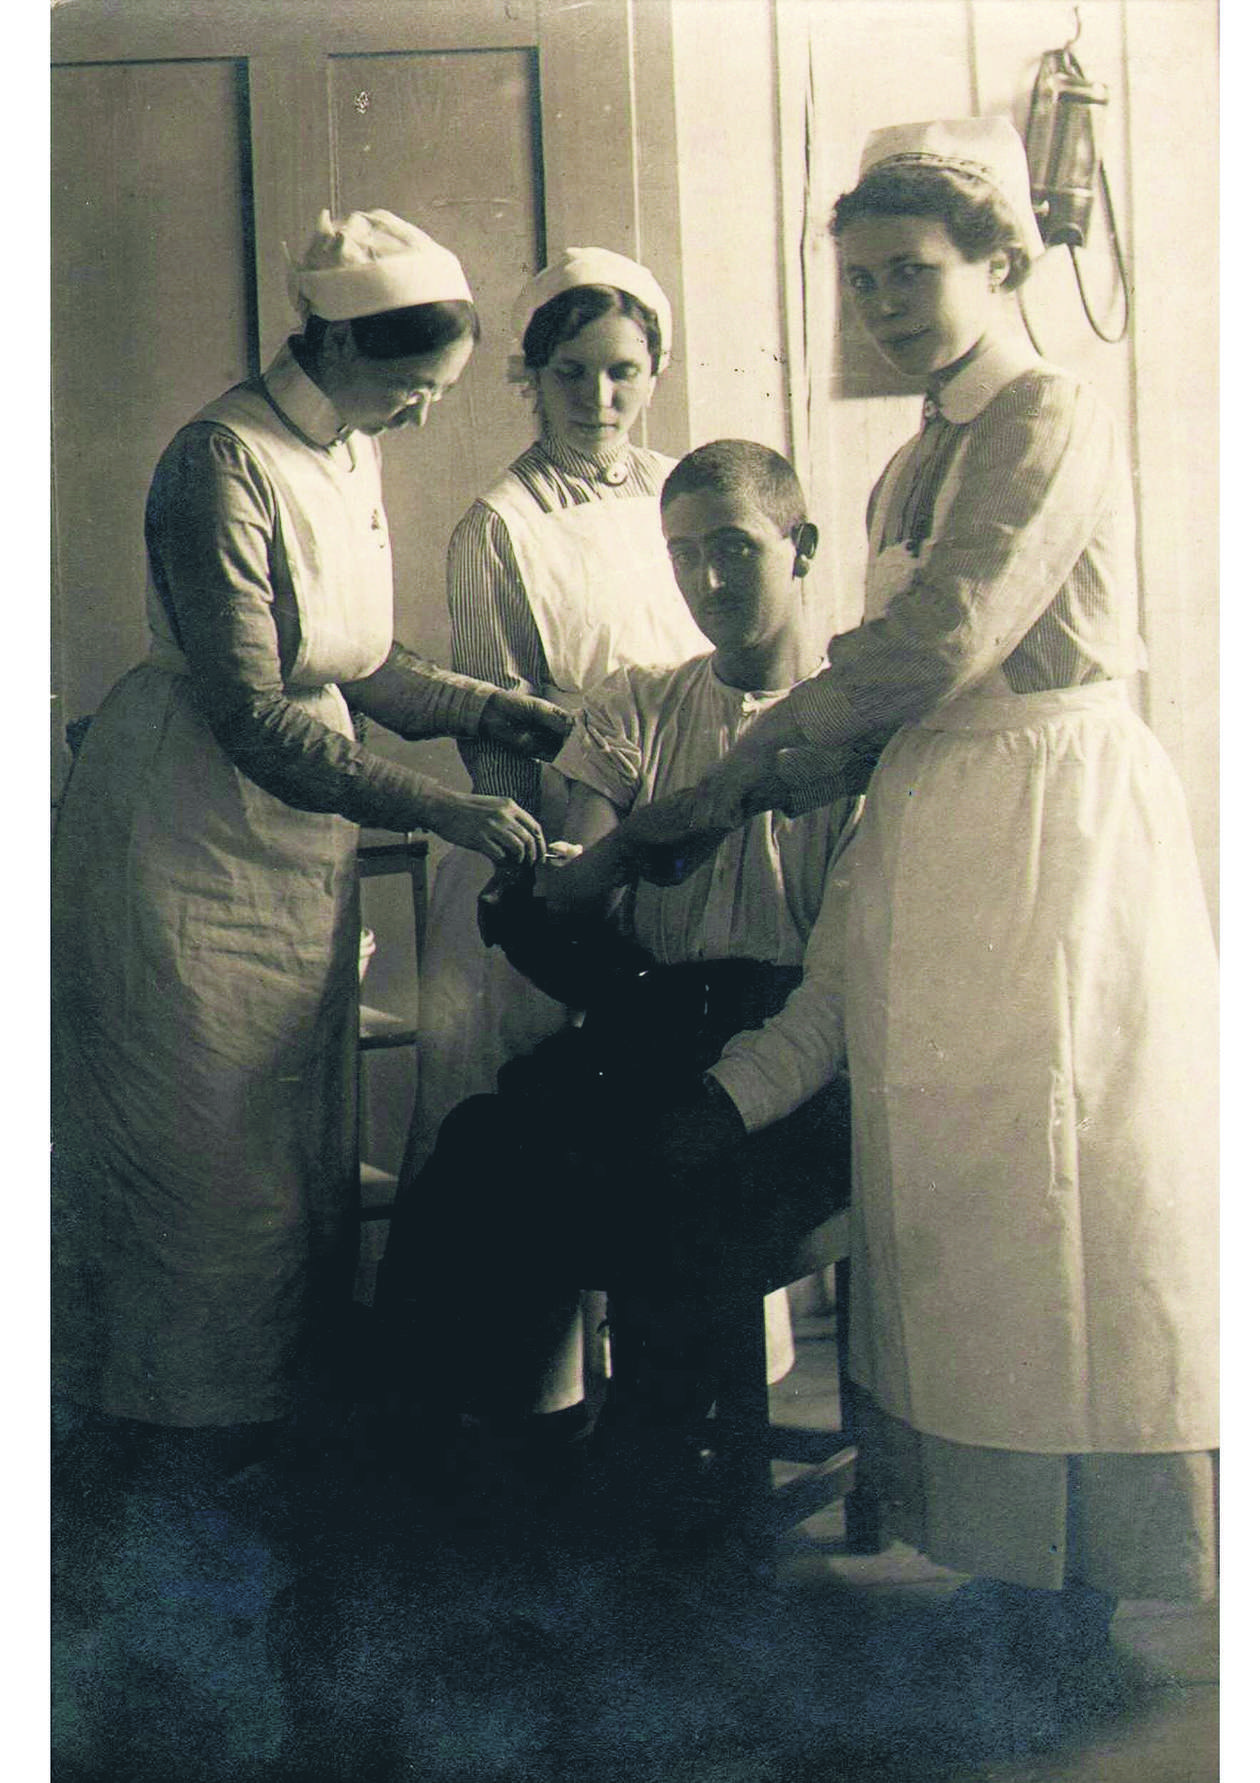  <p>Chorąży Stanisław Hiller ranny w bitwie pod Kostiuchn&oacute;wką w szpitalu przy ul. Namiestnikowskiej&nbsp;</p>
<p>&nbsp;</p>